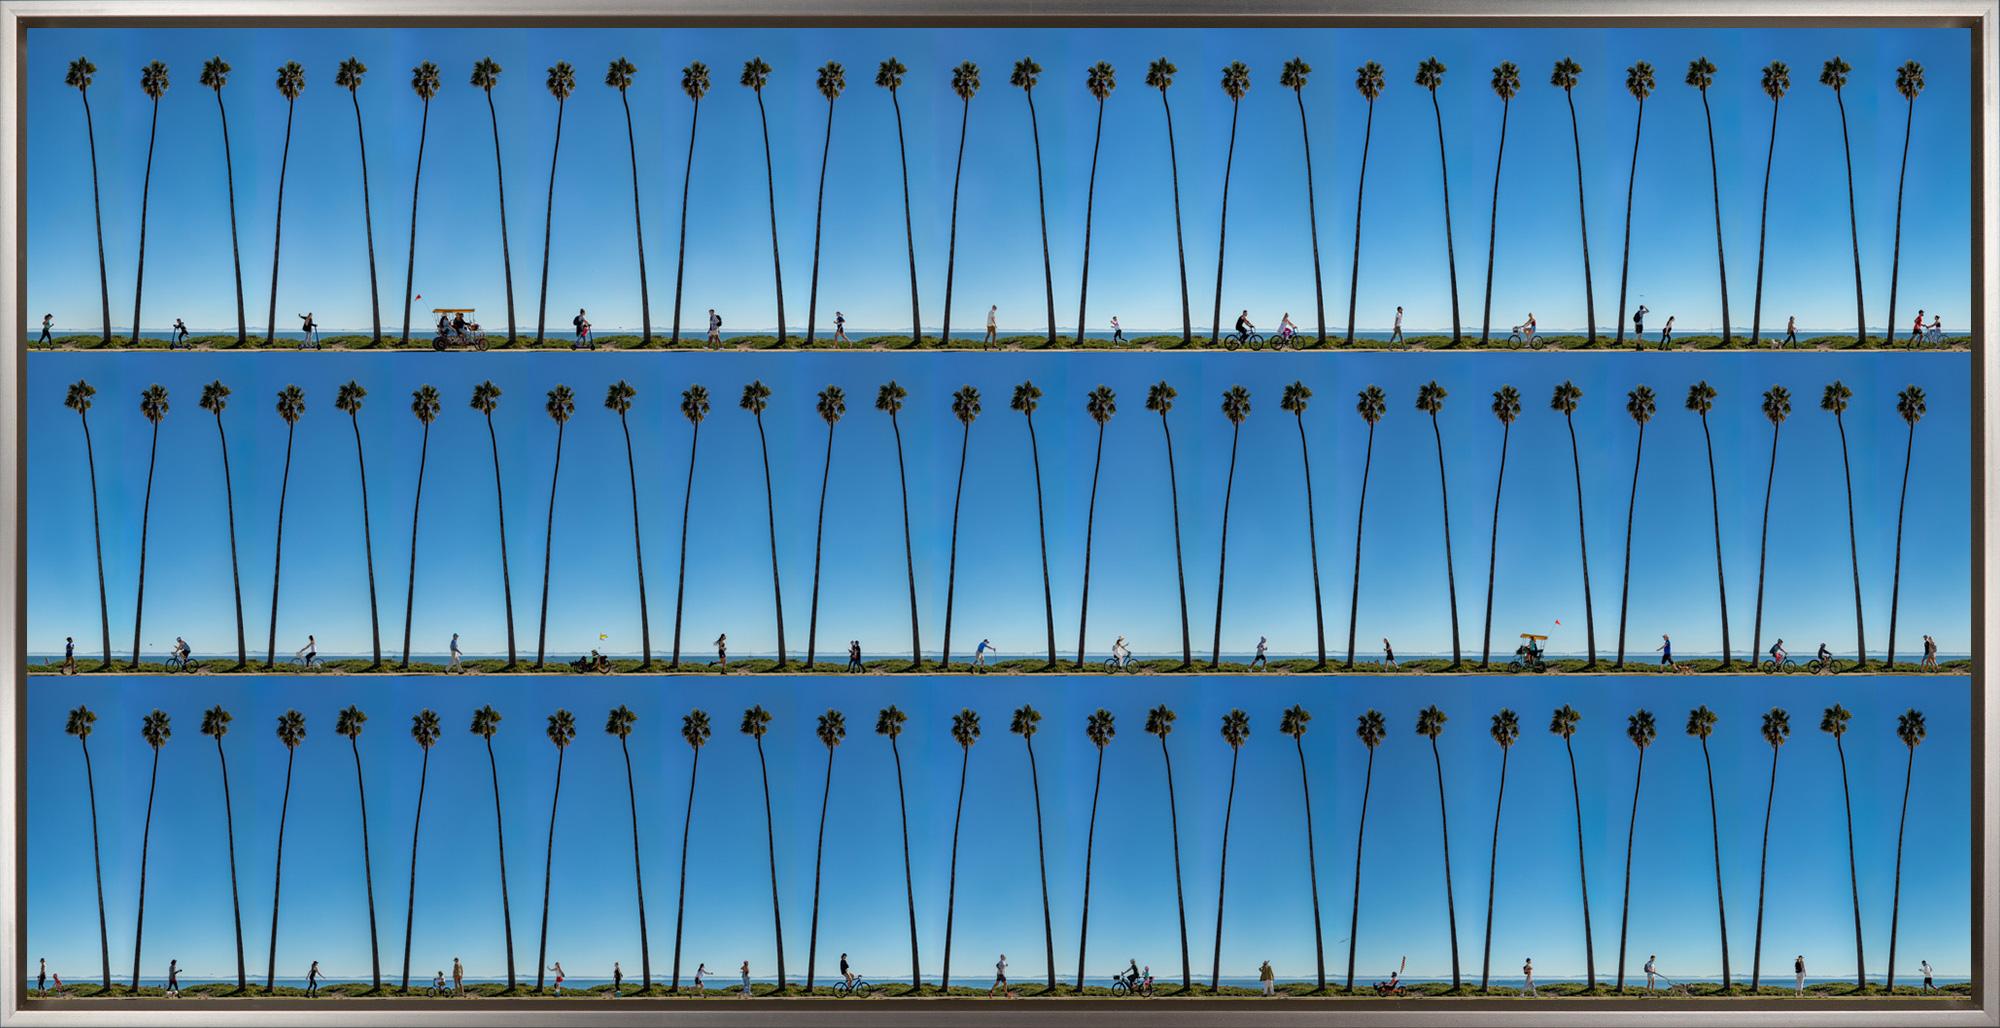 "Waterfront, Santa Barbara" est une photographie encadrée sur aluminium de Xan Padron, représentant une compilation de personnages marchant sur un rivage imposant avec des palmiers. La technique caractéristique de Padron, qui consiste à assembler